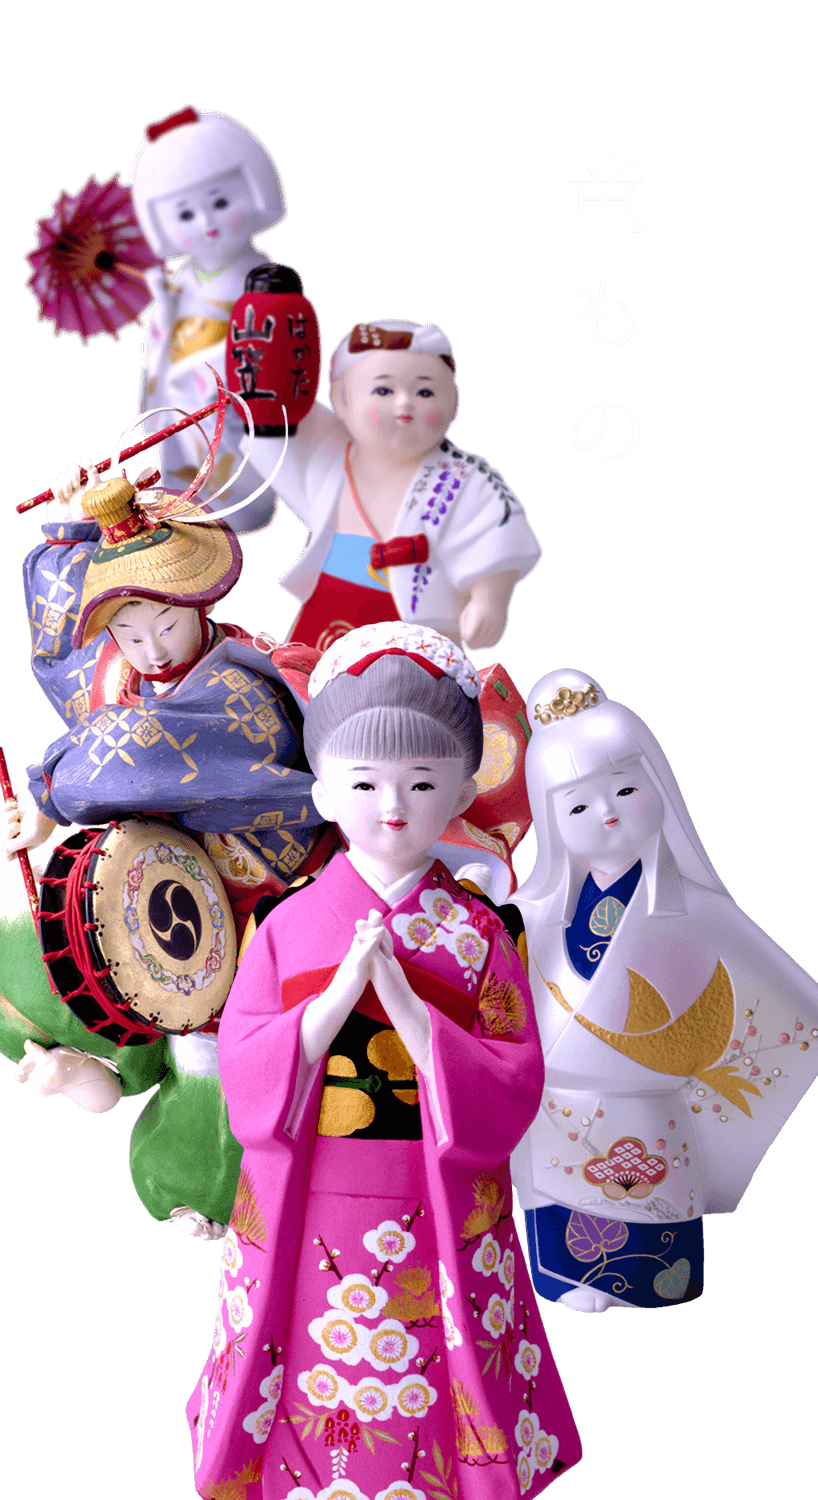 博多人形商工業協同組合 400年余の伝統 博多人形